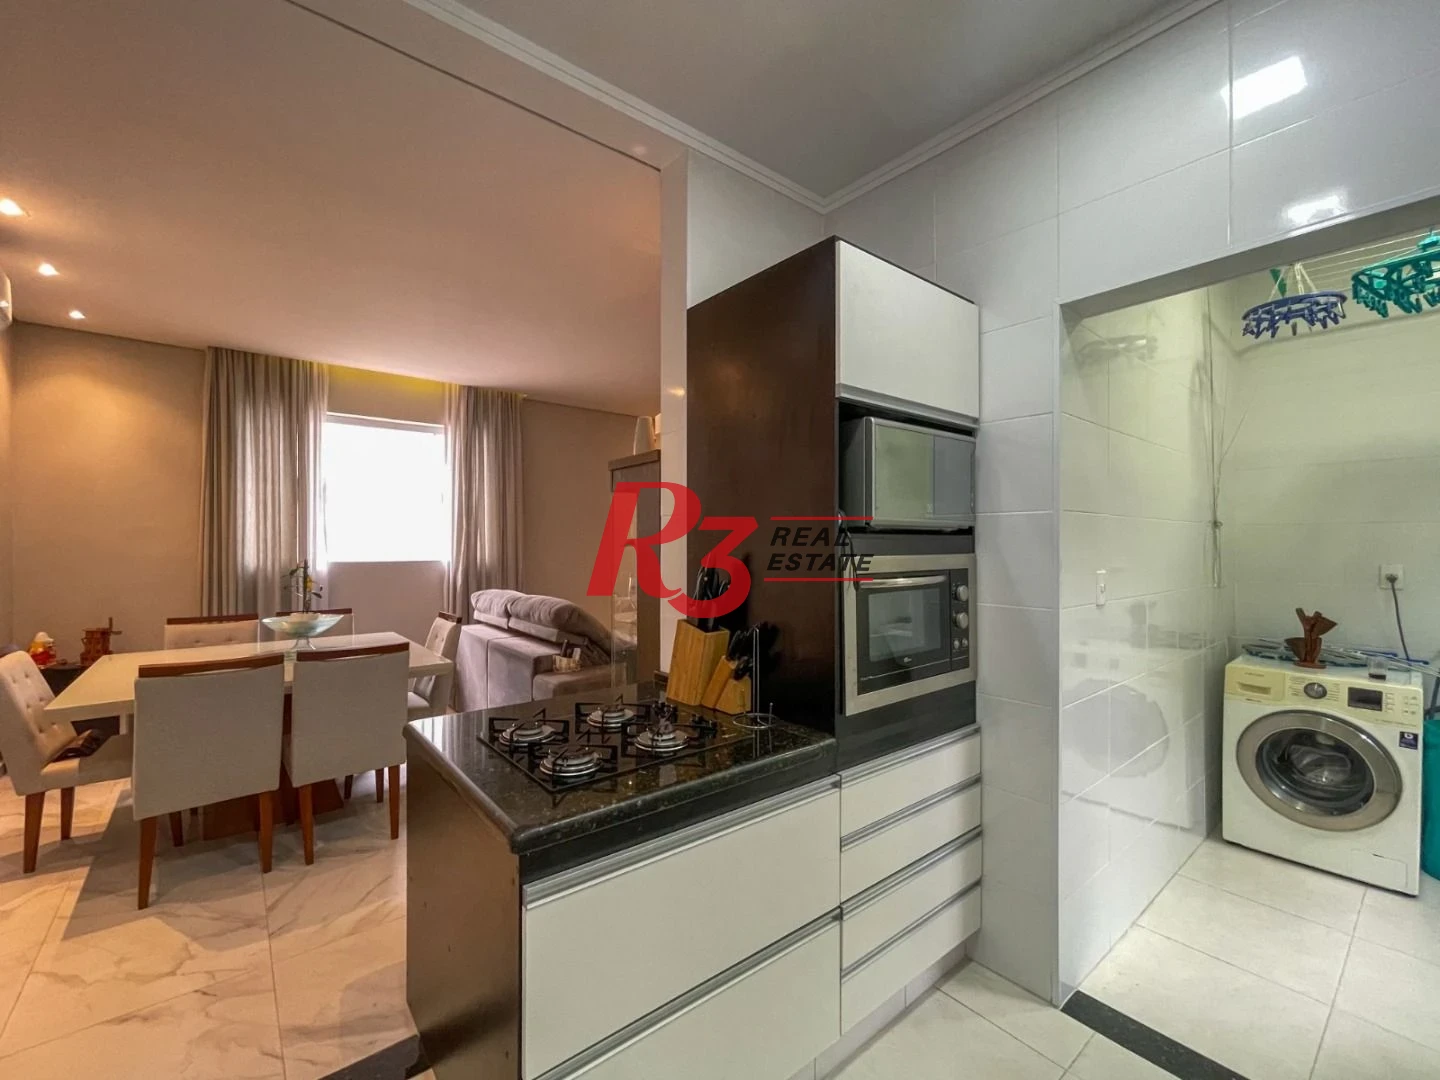 Sobrado com 2 dormitórios à venda, 73 m² por R$ 564.000,00 - Boqueirão - Santos/SP